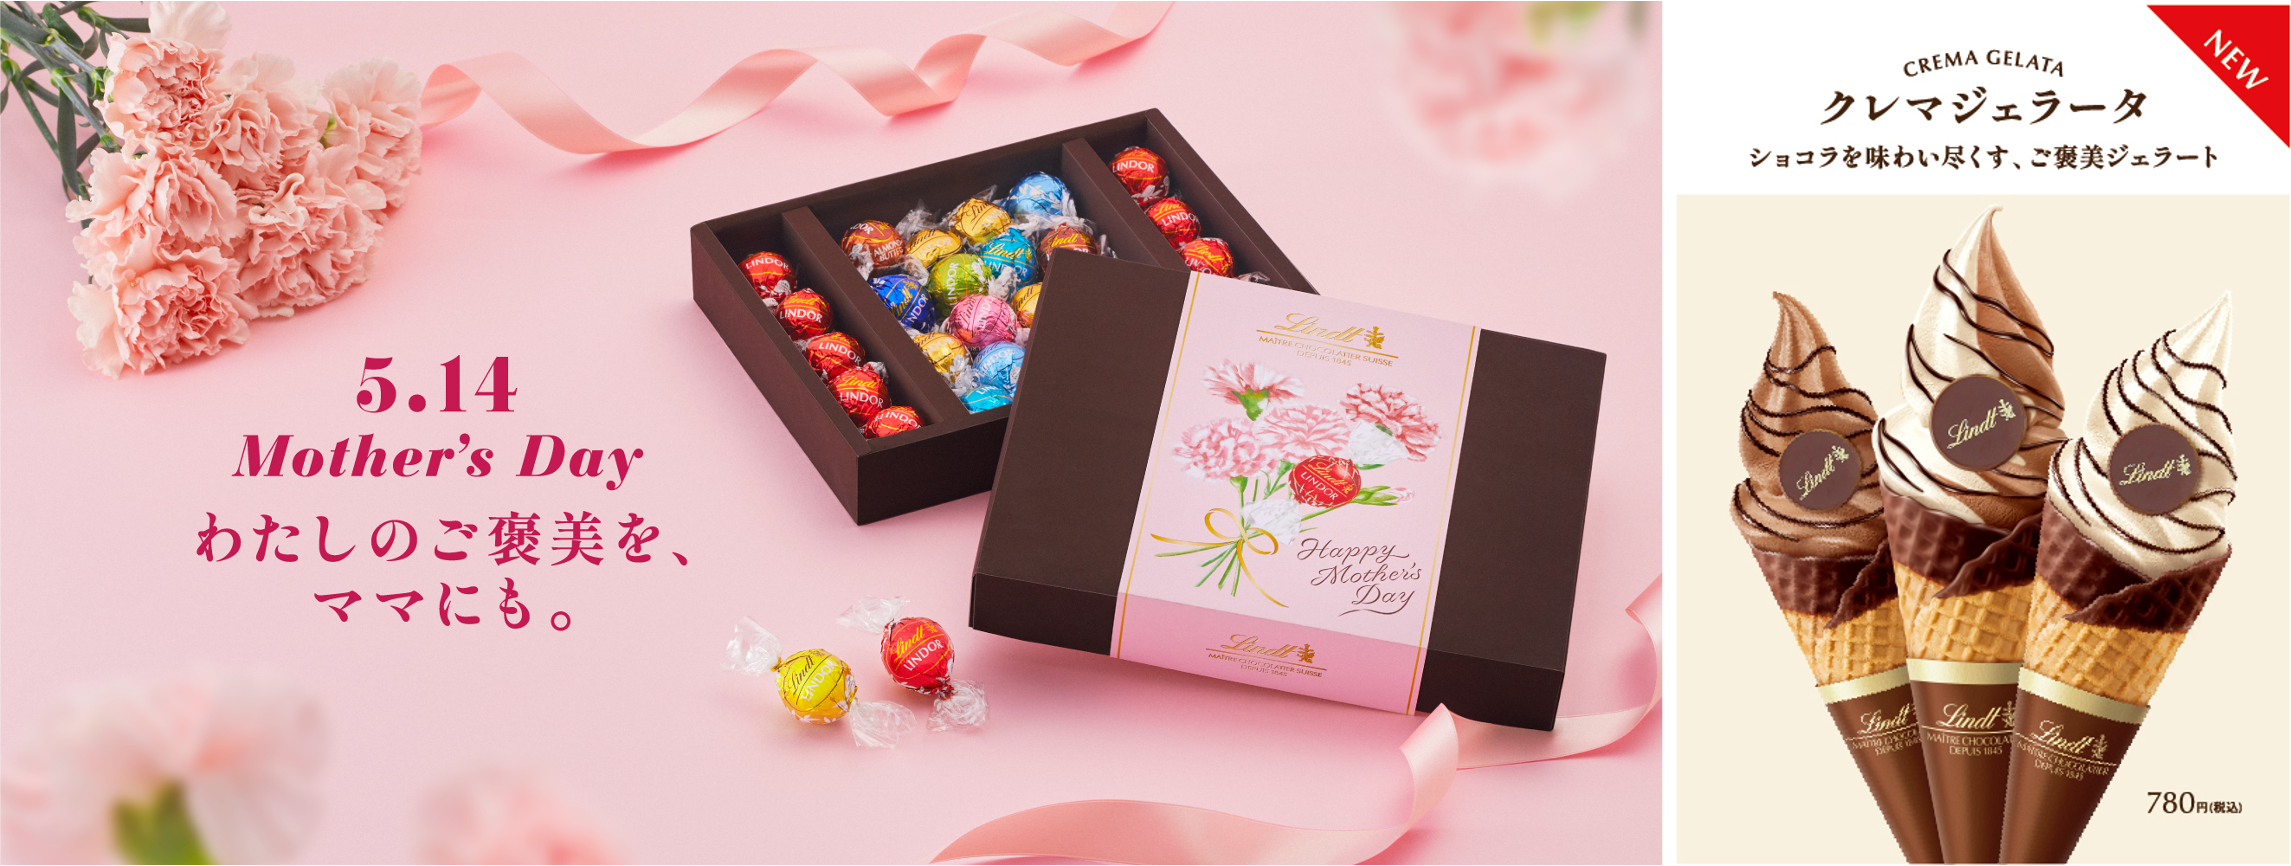 プレミアムチョコレート リンツの『母の日 コレクション』が4月17日より販売！同日よりチョコレート尽くしのジェラート「クレマジェラータ」も新登場のサブ画像1